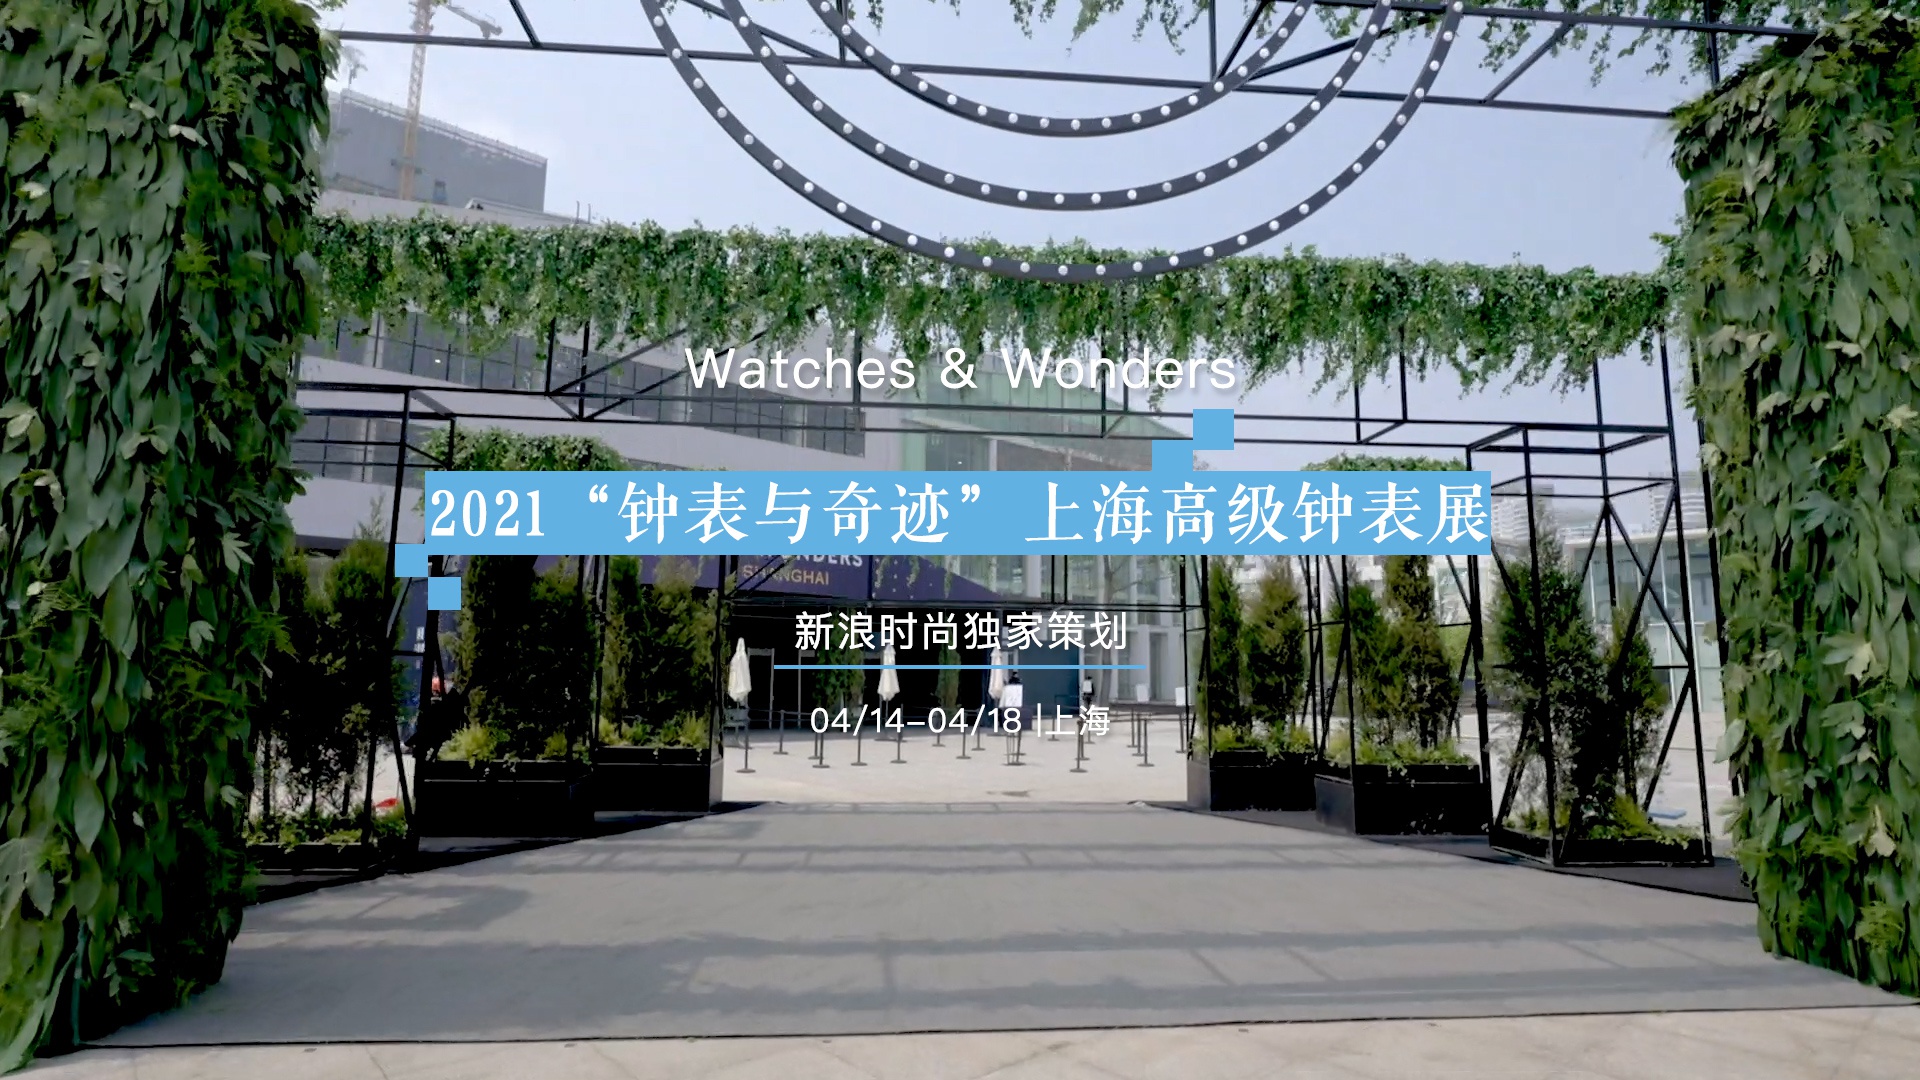 2021年“钟表与奇迹”上海高级钟表展